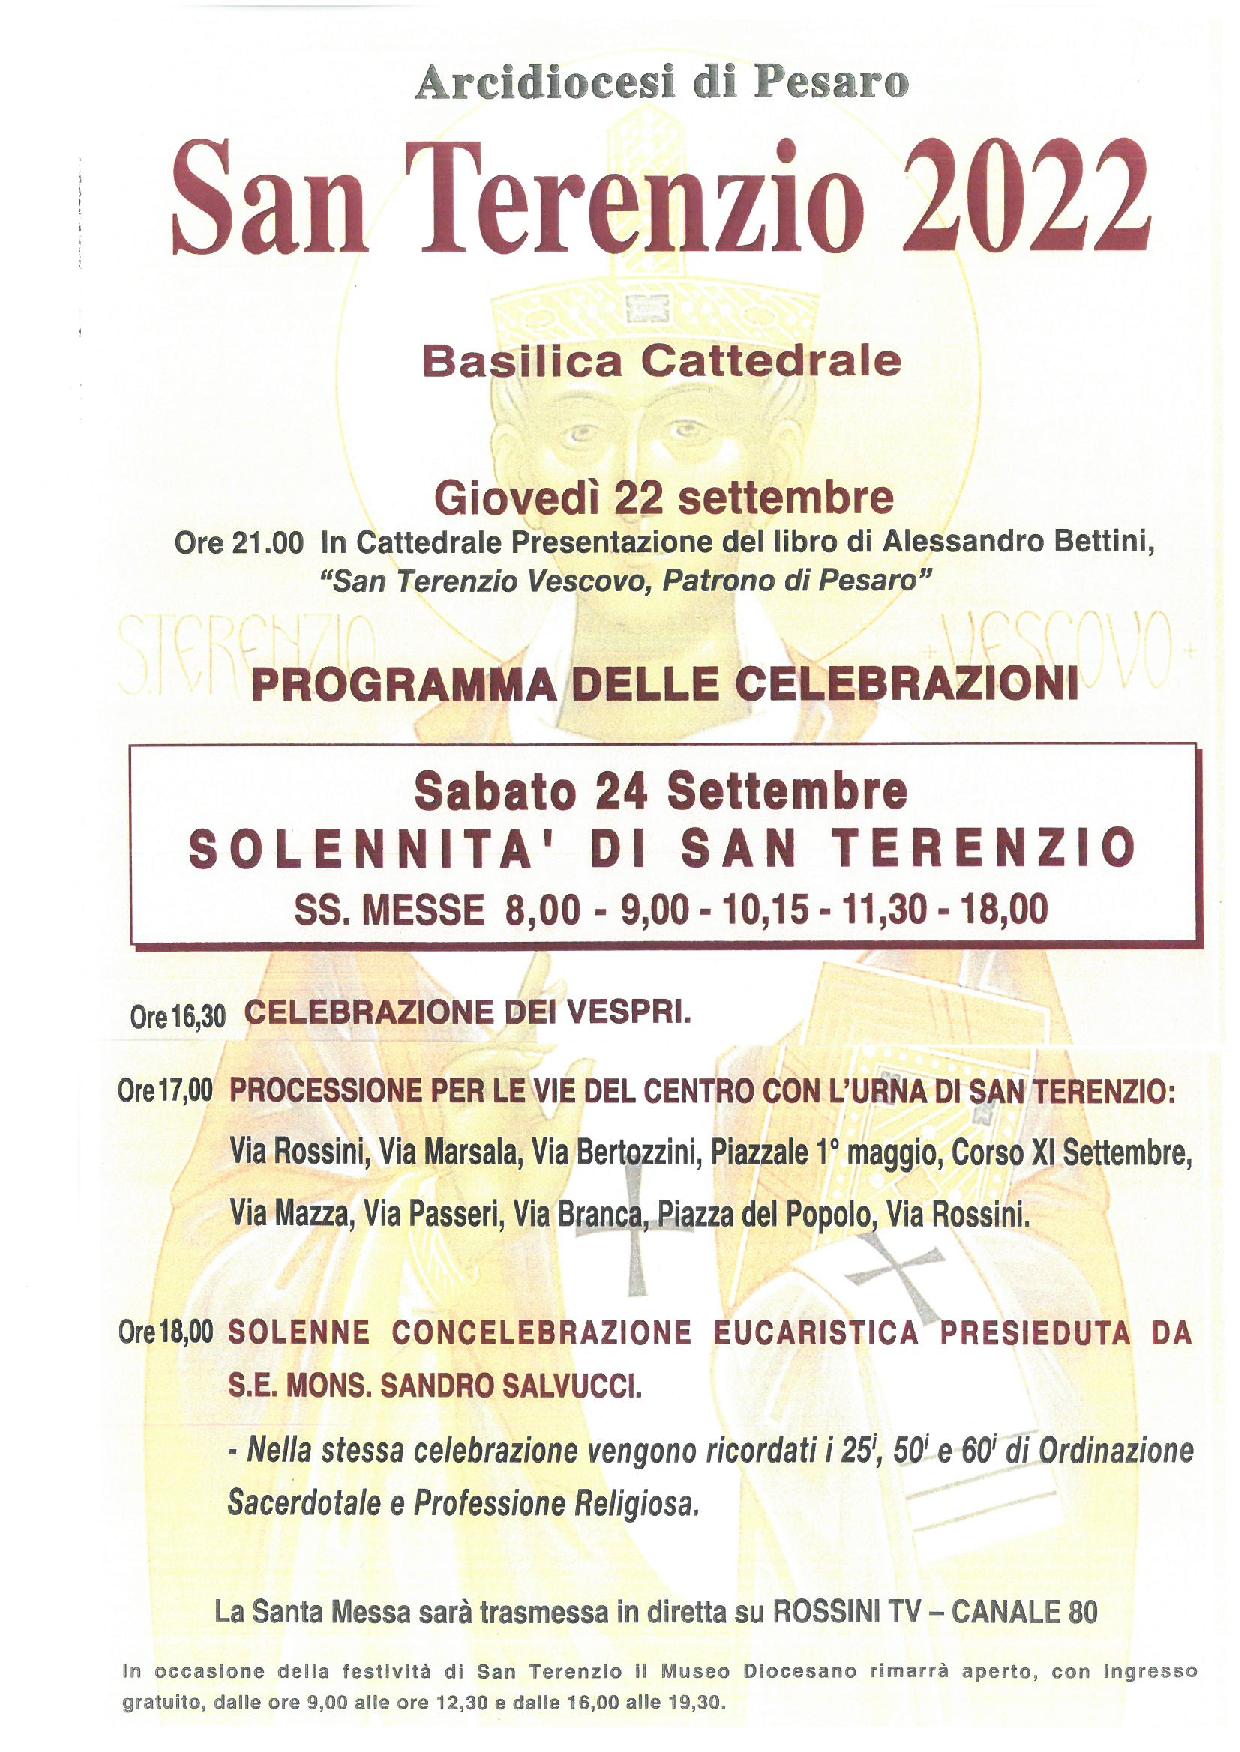 SOLENNITA’ DI SAN TERENZIO, patrono di Pesaro – 24 settembre 2022 – Programma delle celebrazioni